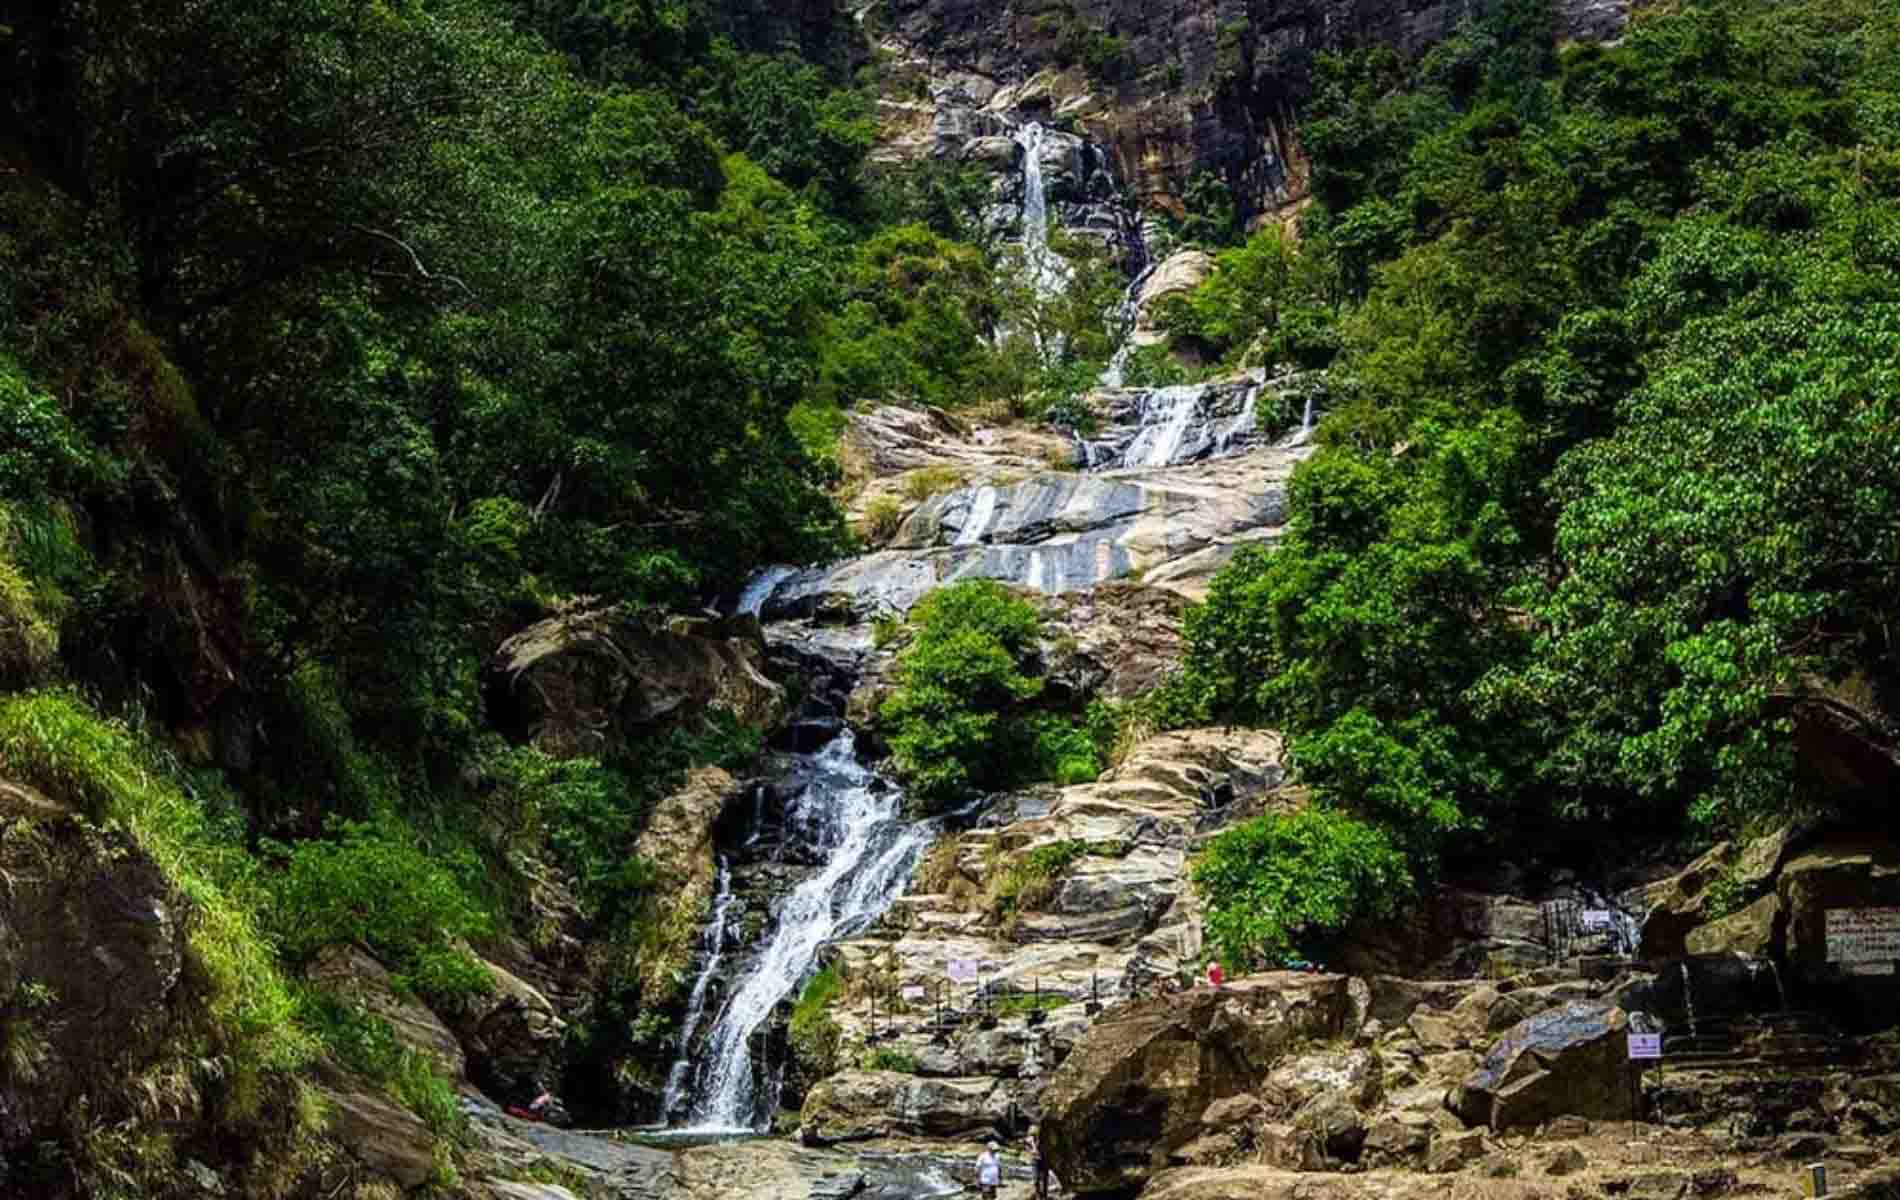 Ravana falls in Sri Lanka